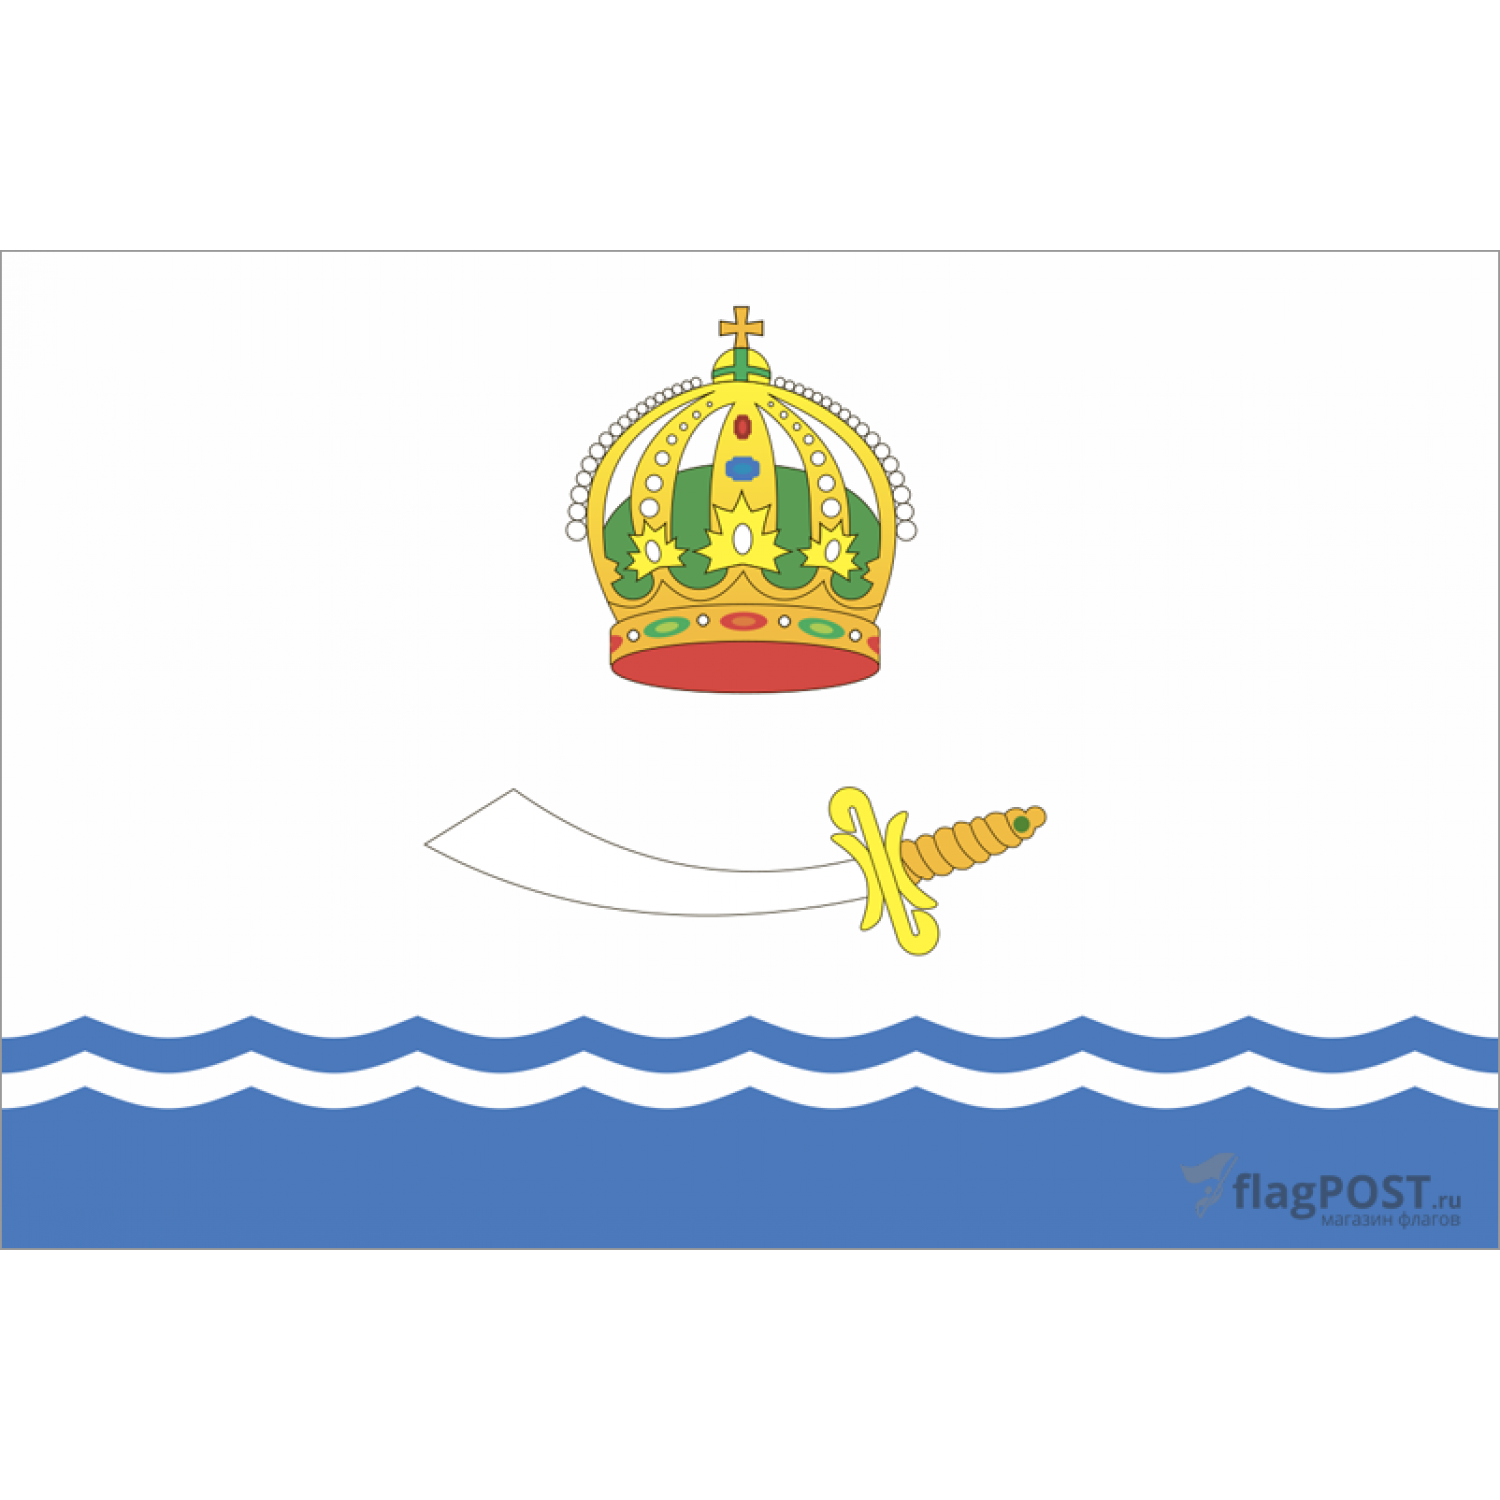 Флаг города Астрахань (15x22 см., полиэфирный шелк, прямая печать, карман слева)